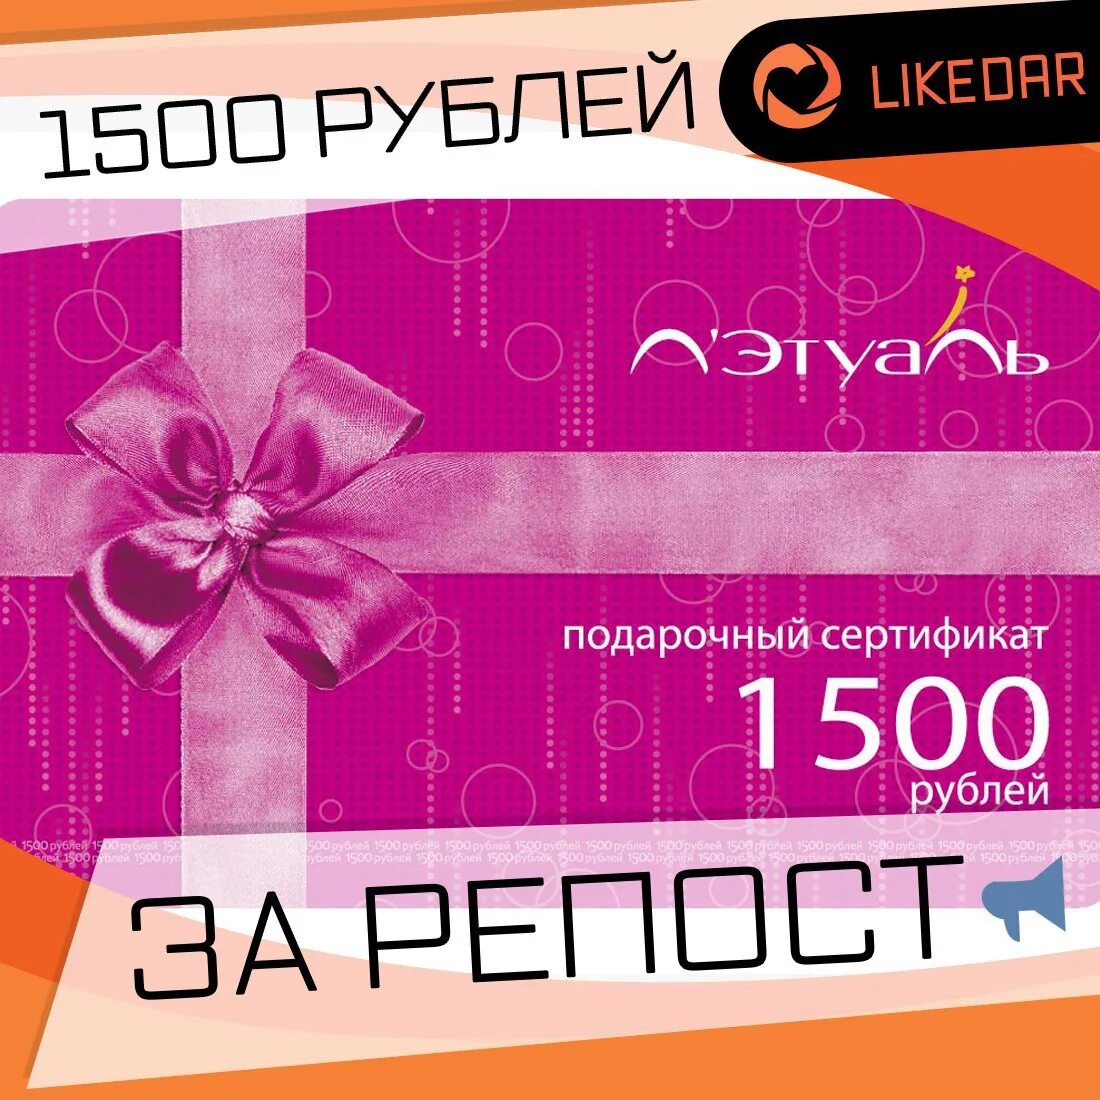 Можно обменять подарочный сертификат летуаль на деньги. Подарочный сертификат 1500 рублей. Подарочная карта. Этуаль подарочный сертификат. Подарочный сертификат на 1500 руб.